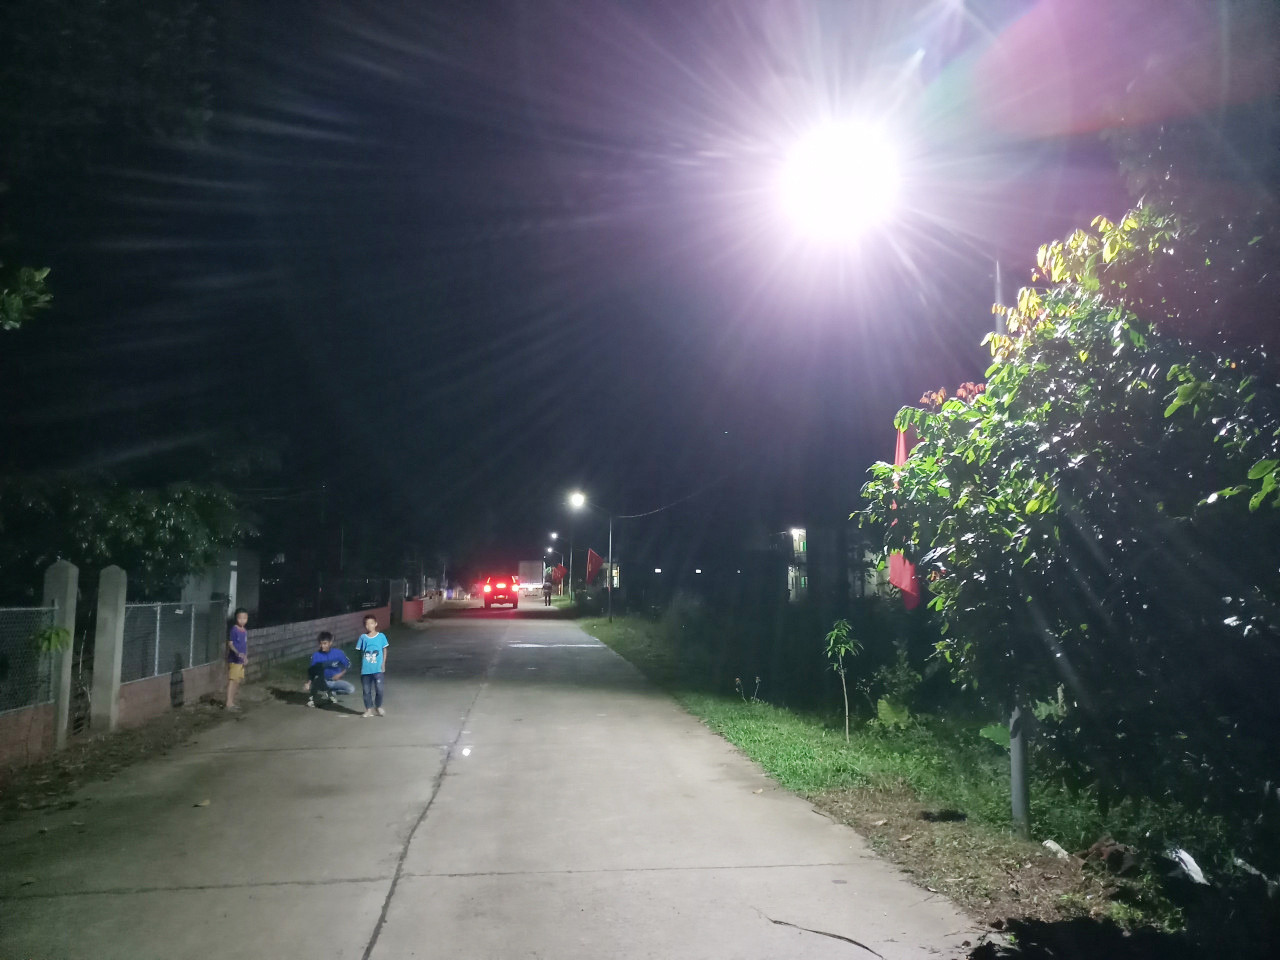 Thắp sáng đường quê được triển khai có hiệu quả. Ảnh: tuyến điện chiếu sáng thôn Thán Phún Xã, xã Hải Sơn.